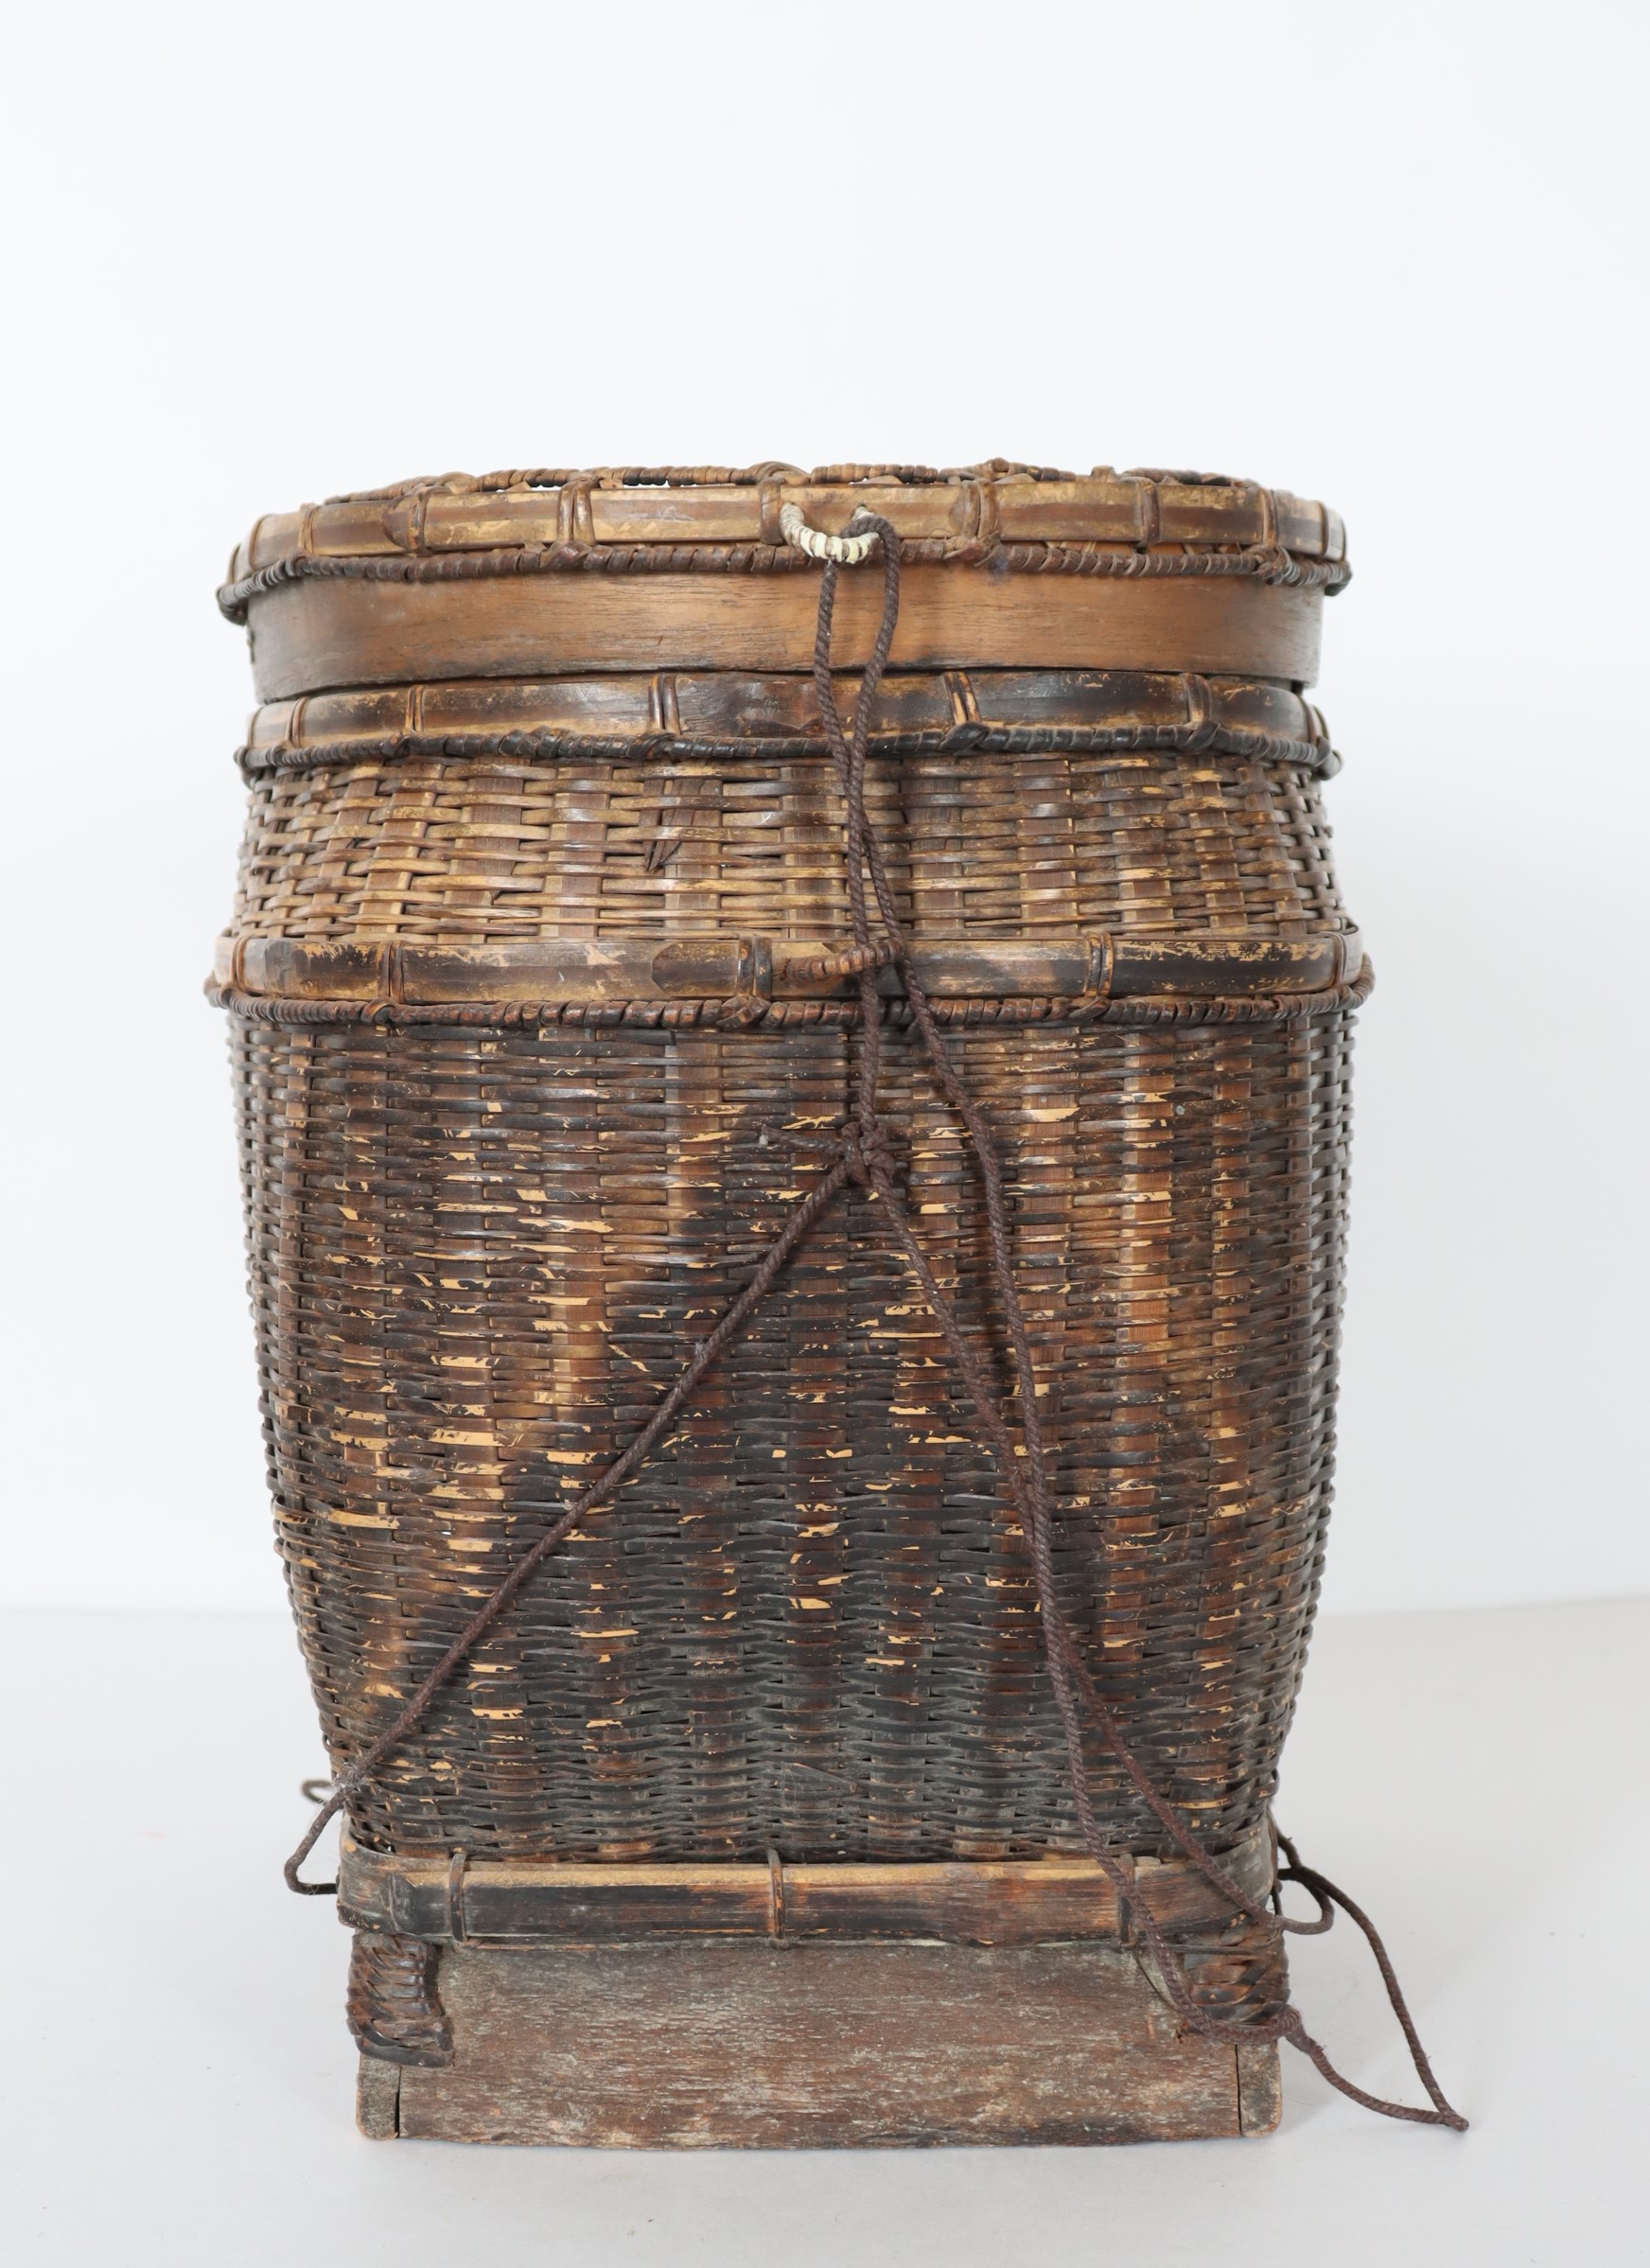 Woven Fishing Basket - Image 4 of 4